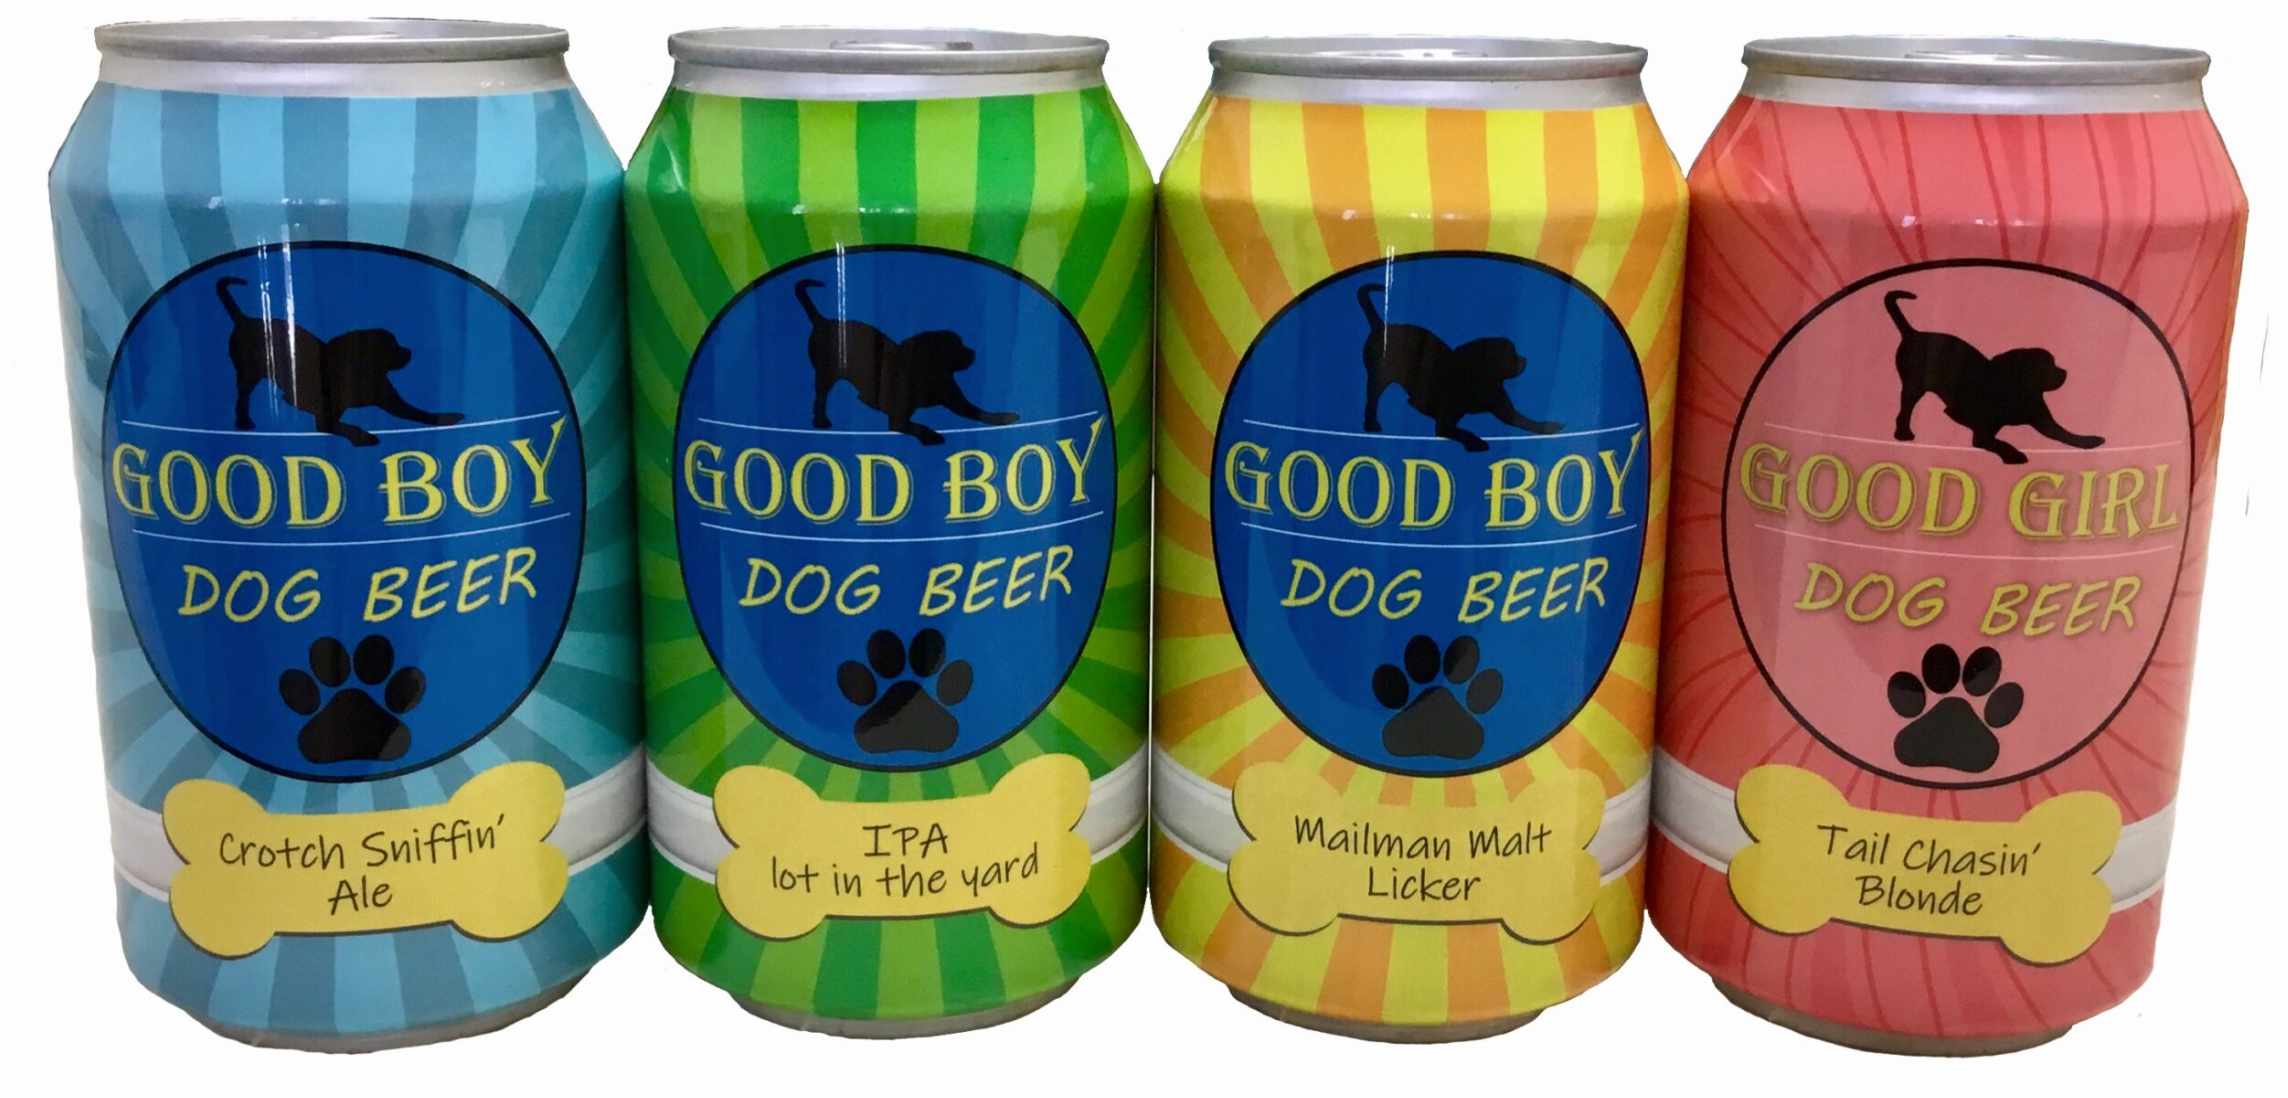 Good Boy Non-Alcoholic "Dog Beer"